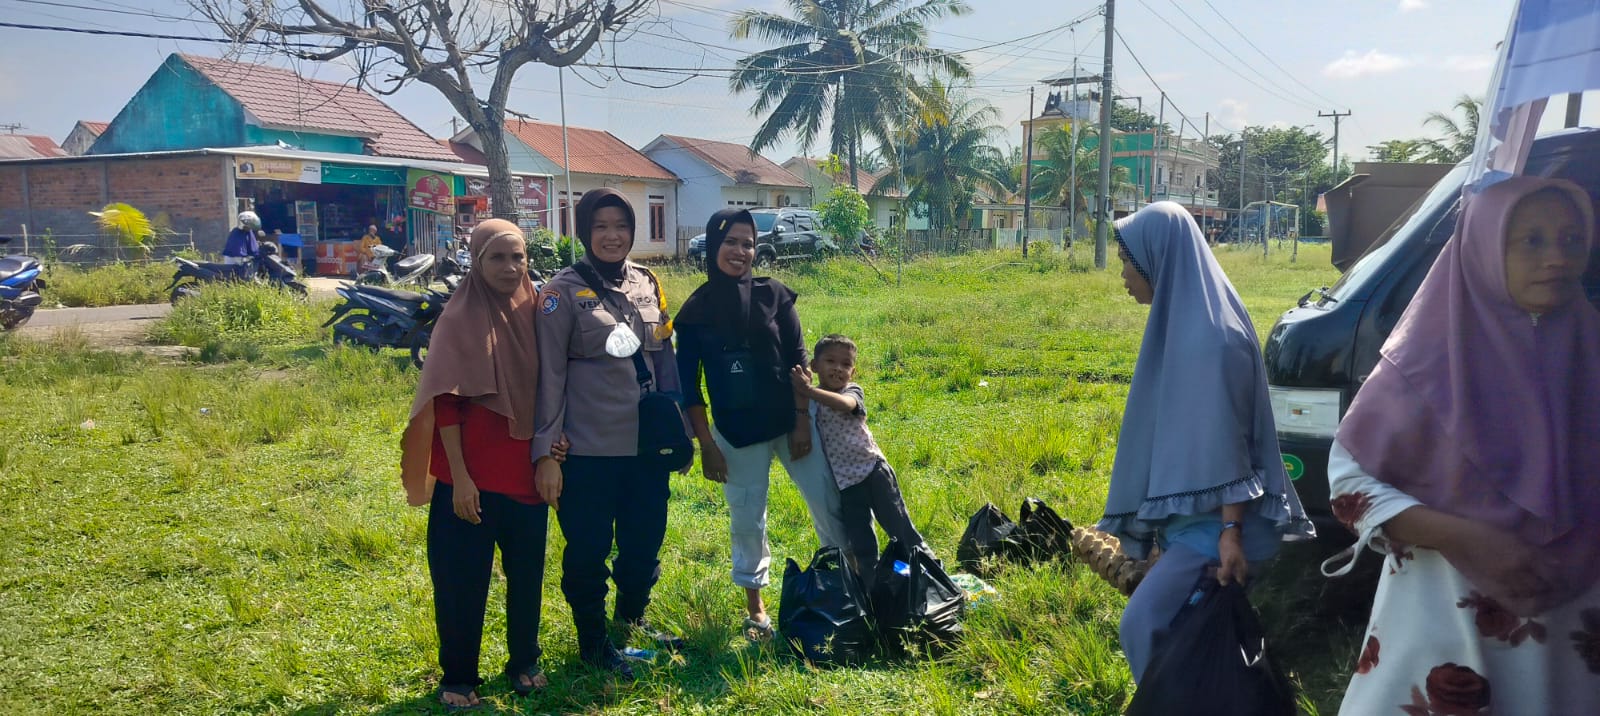 Bhabinkamtibmas Polsek Kampung Melayu Monitoring dan Pengamanan Pasar Murah